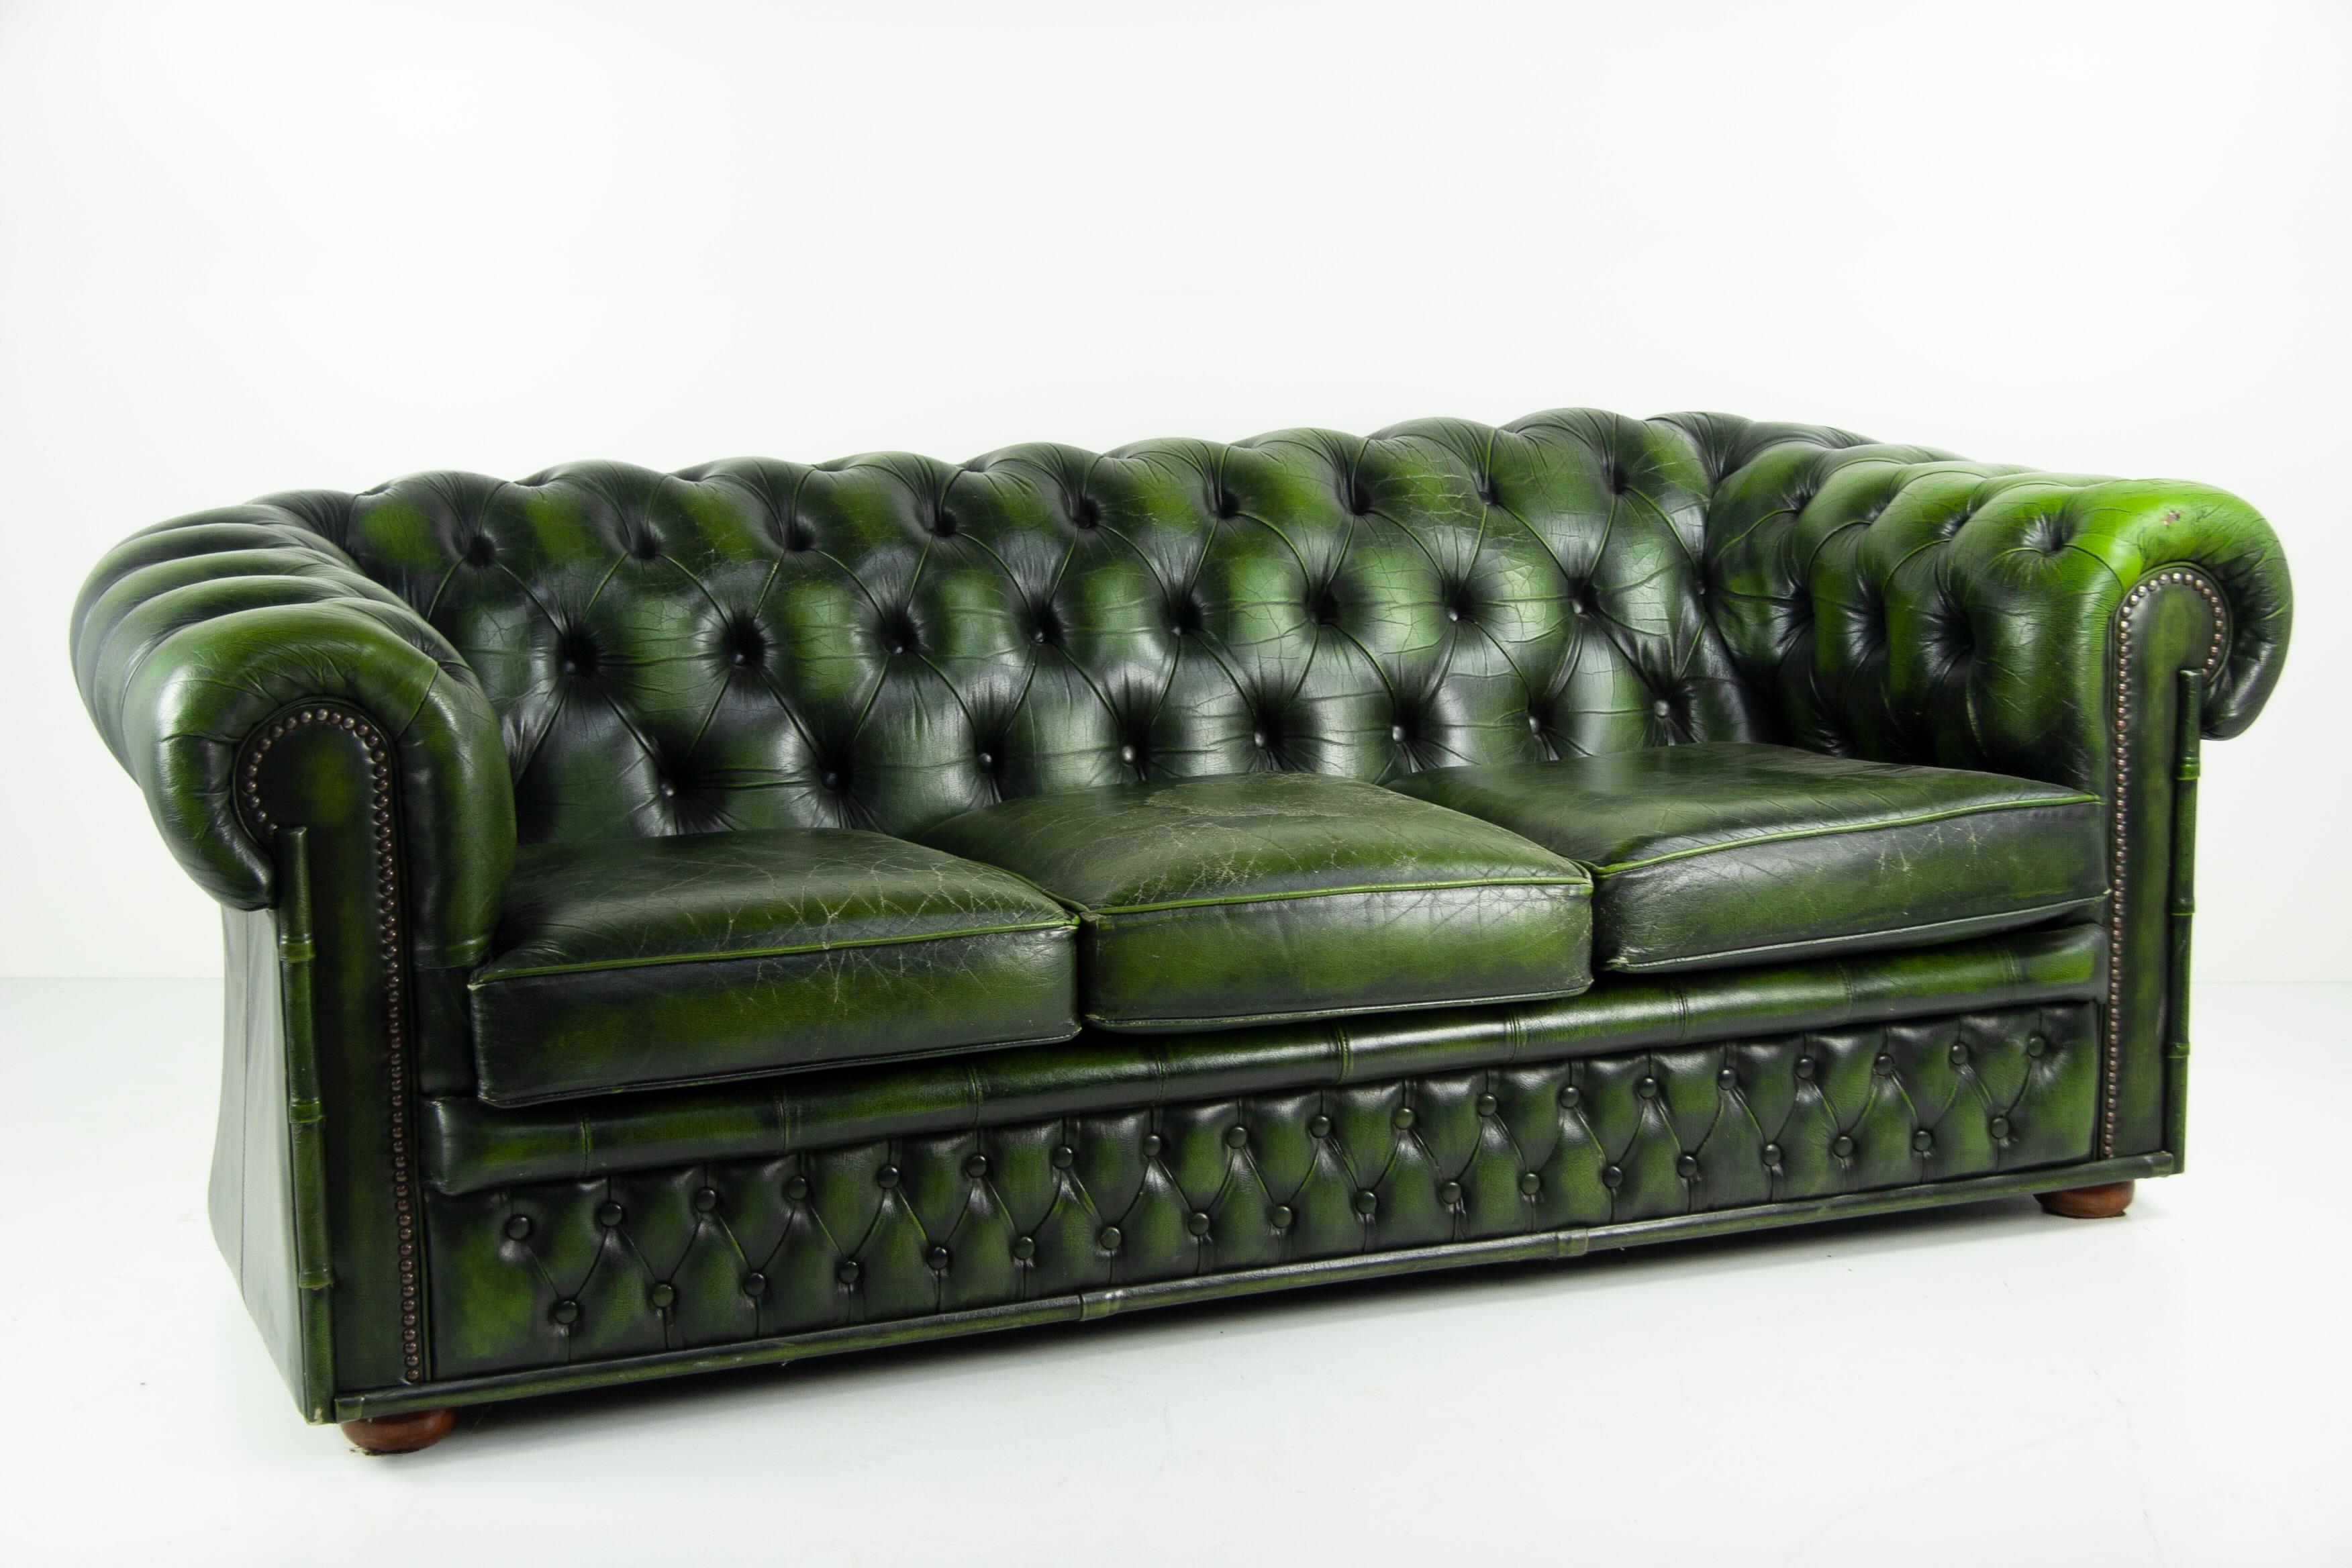 Tauchen Sie ein in die Anziehungskraft klassischer britischer Eleganz mit diesem Vintage 60s London Chesterfield Sofa. Mit seinem petrolgrünen Leder ist dieses Stück ein herausragendes Artefakt seiner Zeit. Die reiche Patina des Leders verleiht ihm